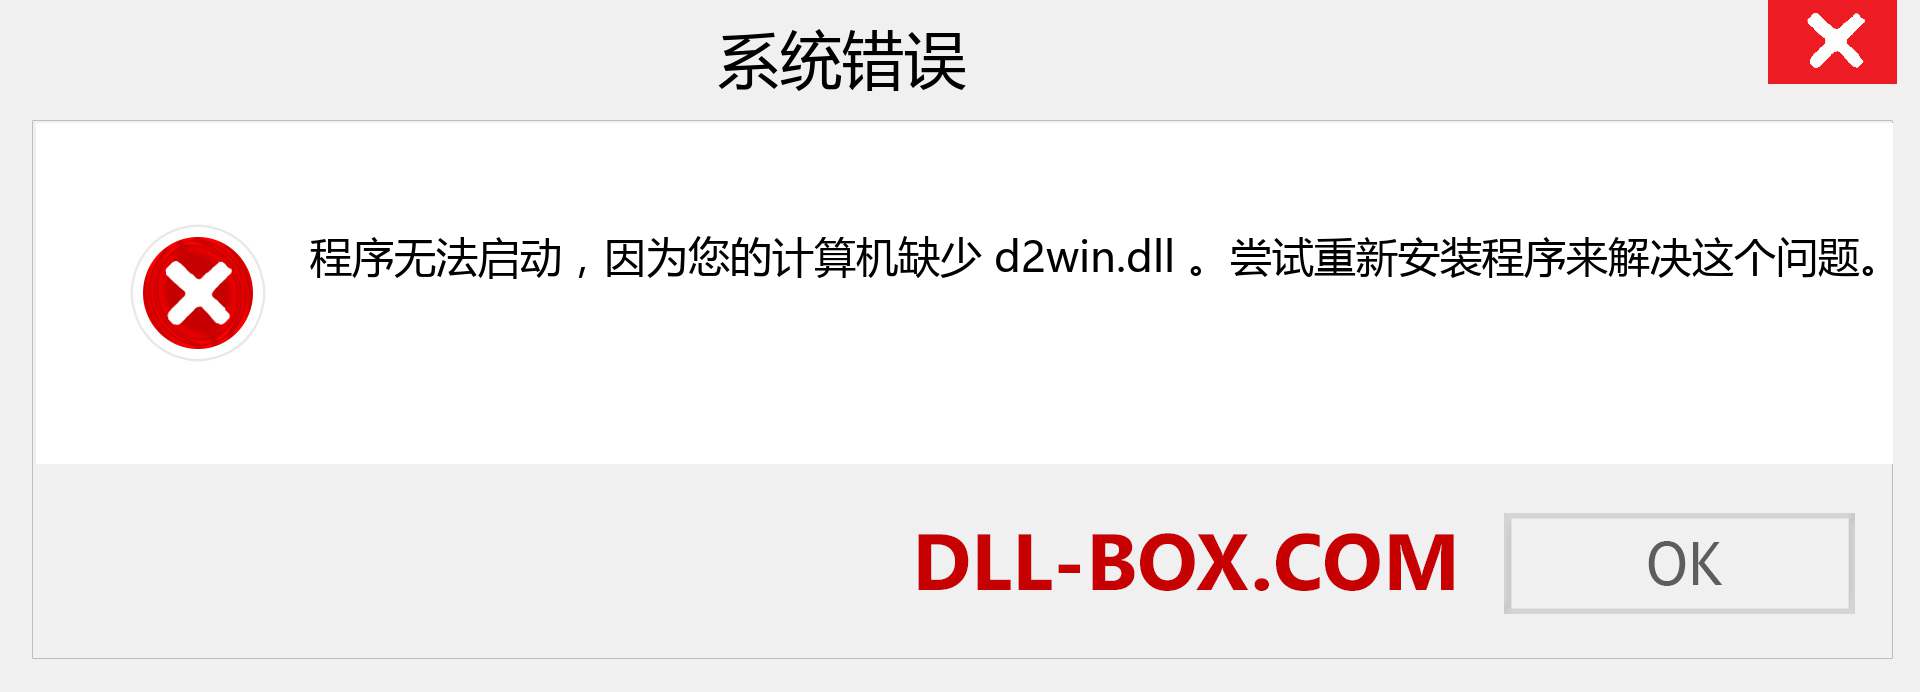 d2win.dll 文件丢失？。 适用于 Windows 7、8、10 的下载 - 修复 Windows、照片、图像上的 d2win dll 丢失错误